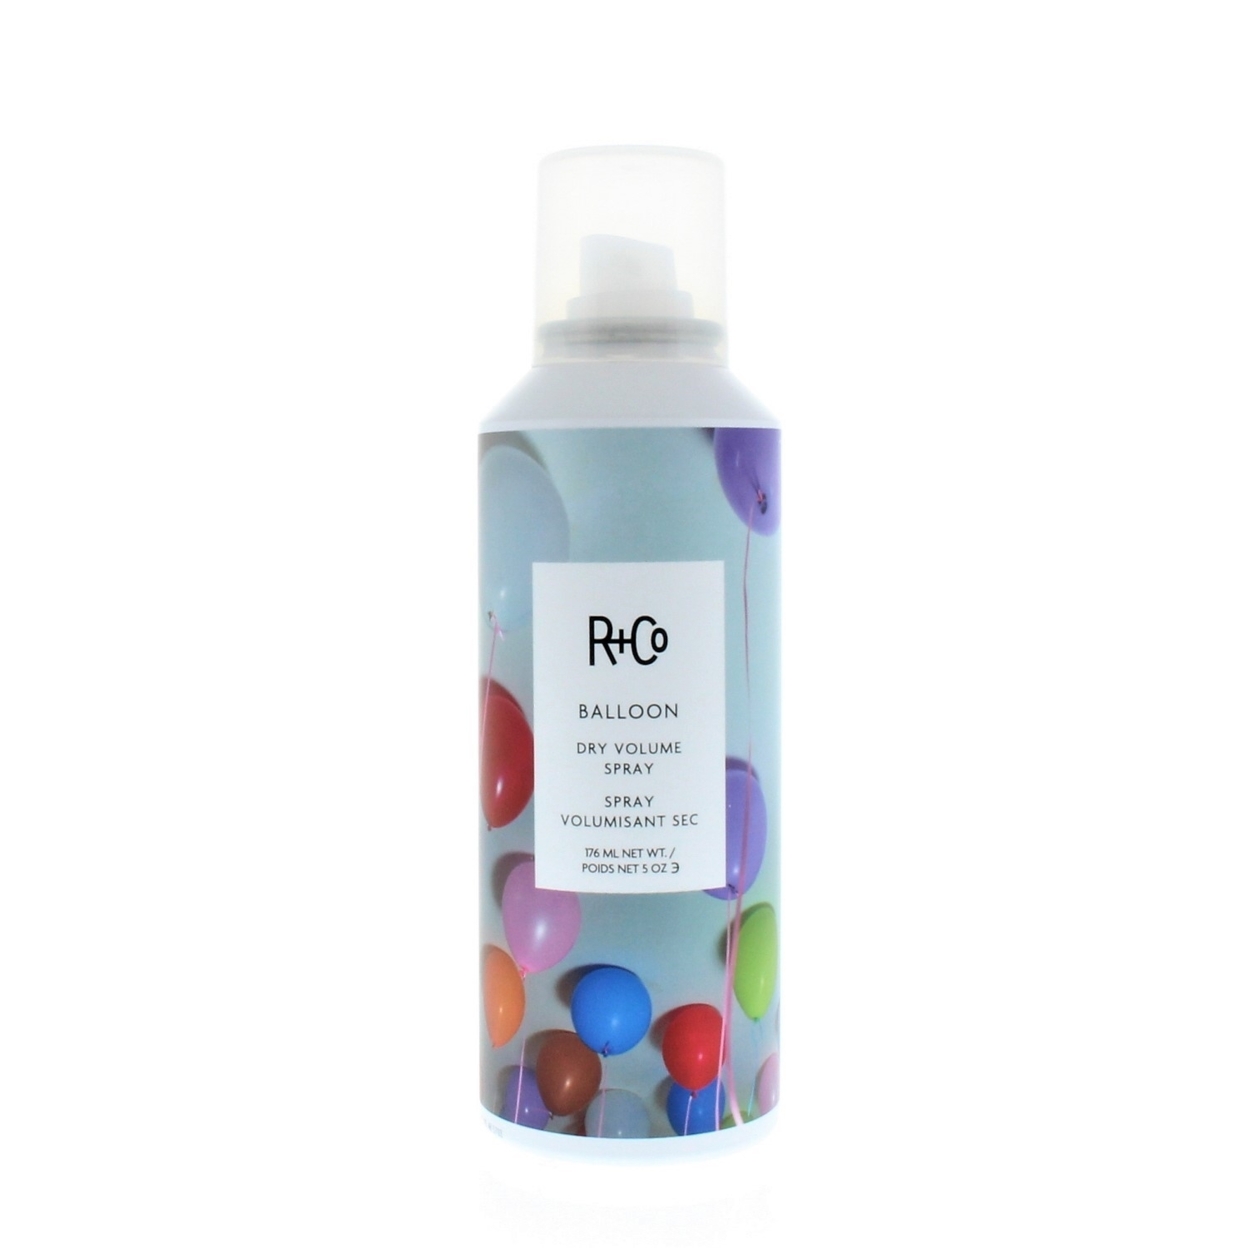 R+Co Balloon Dry Volume Spray 5oz/176ml